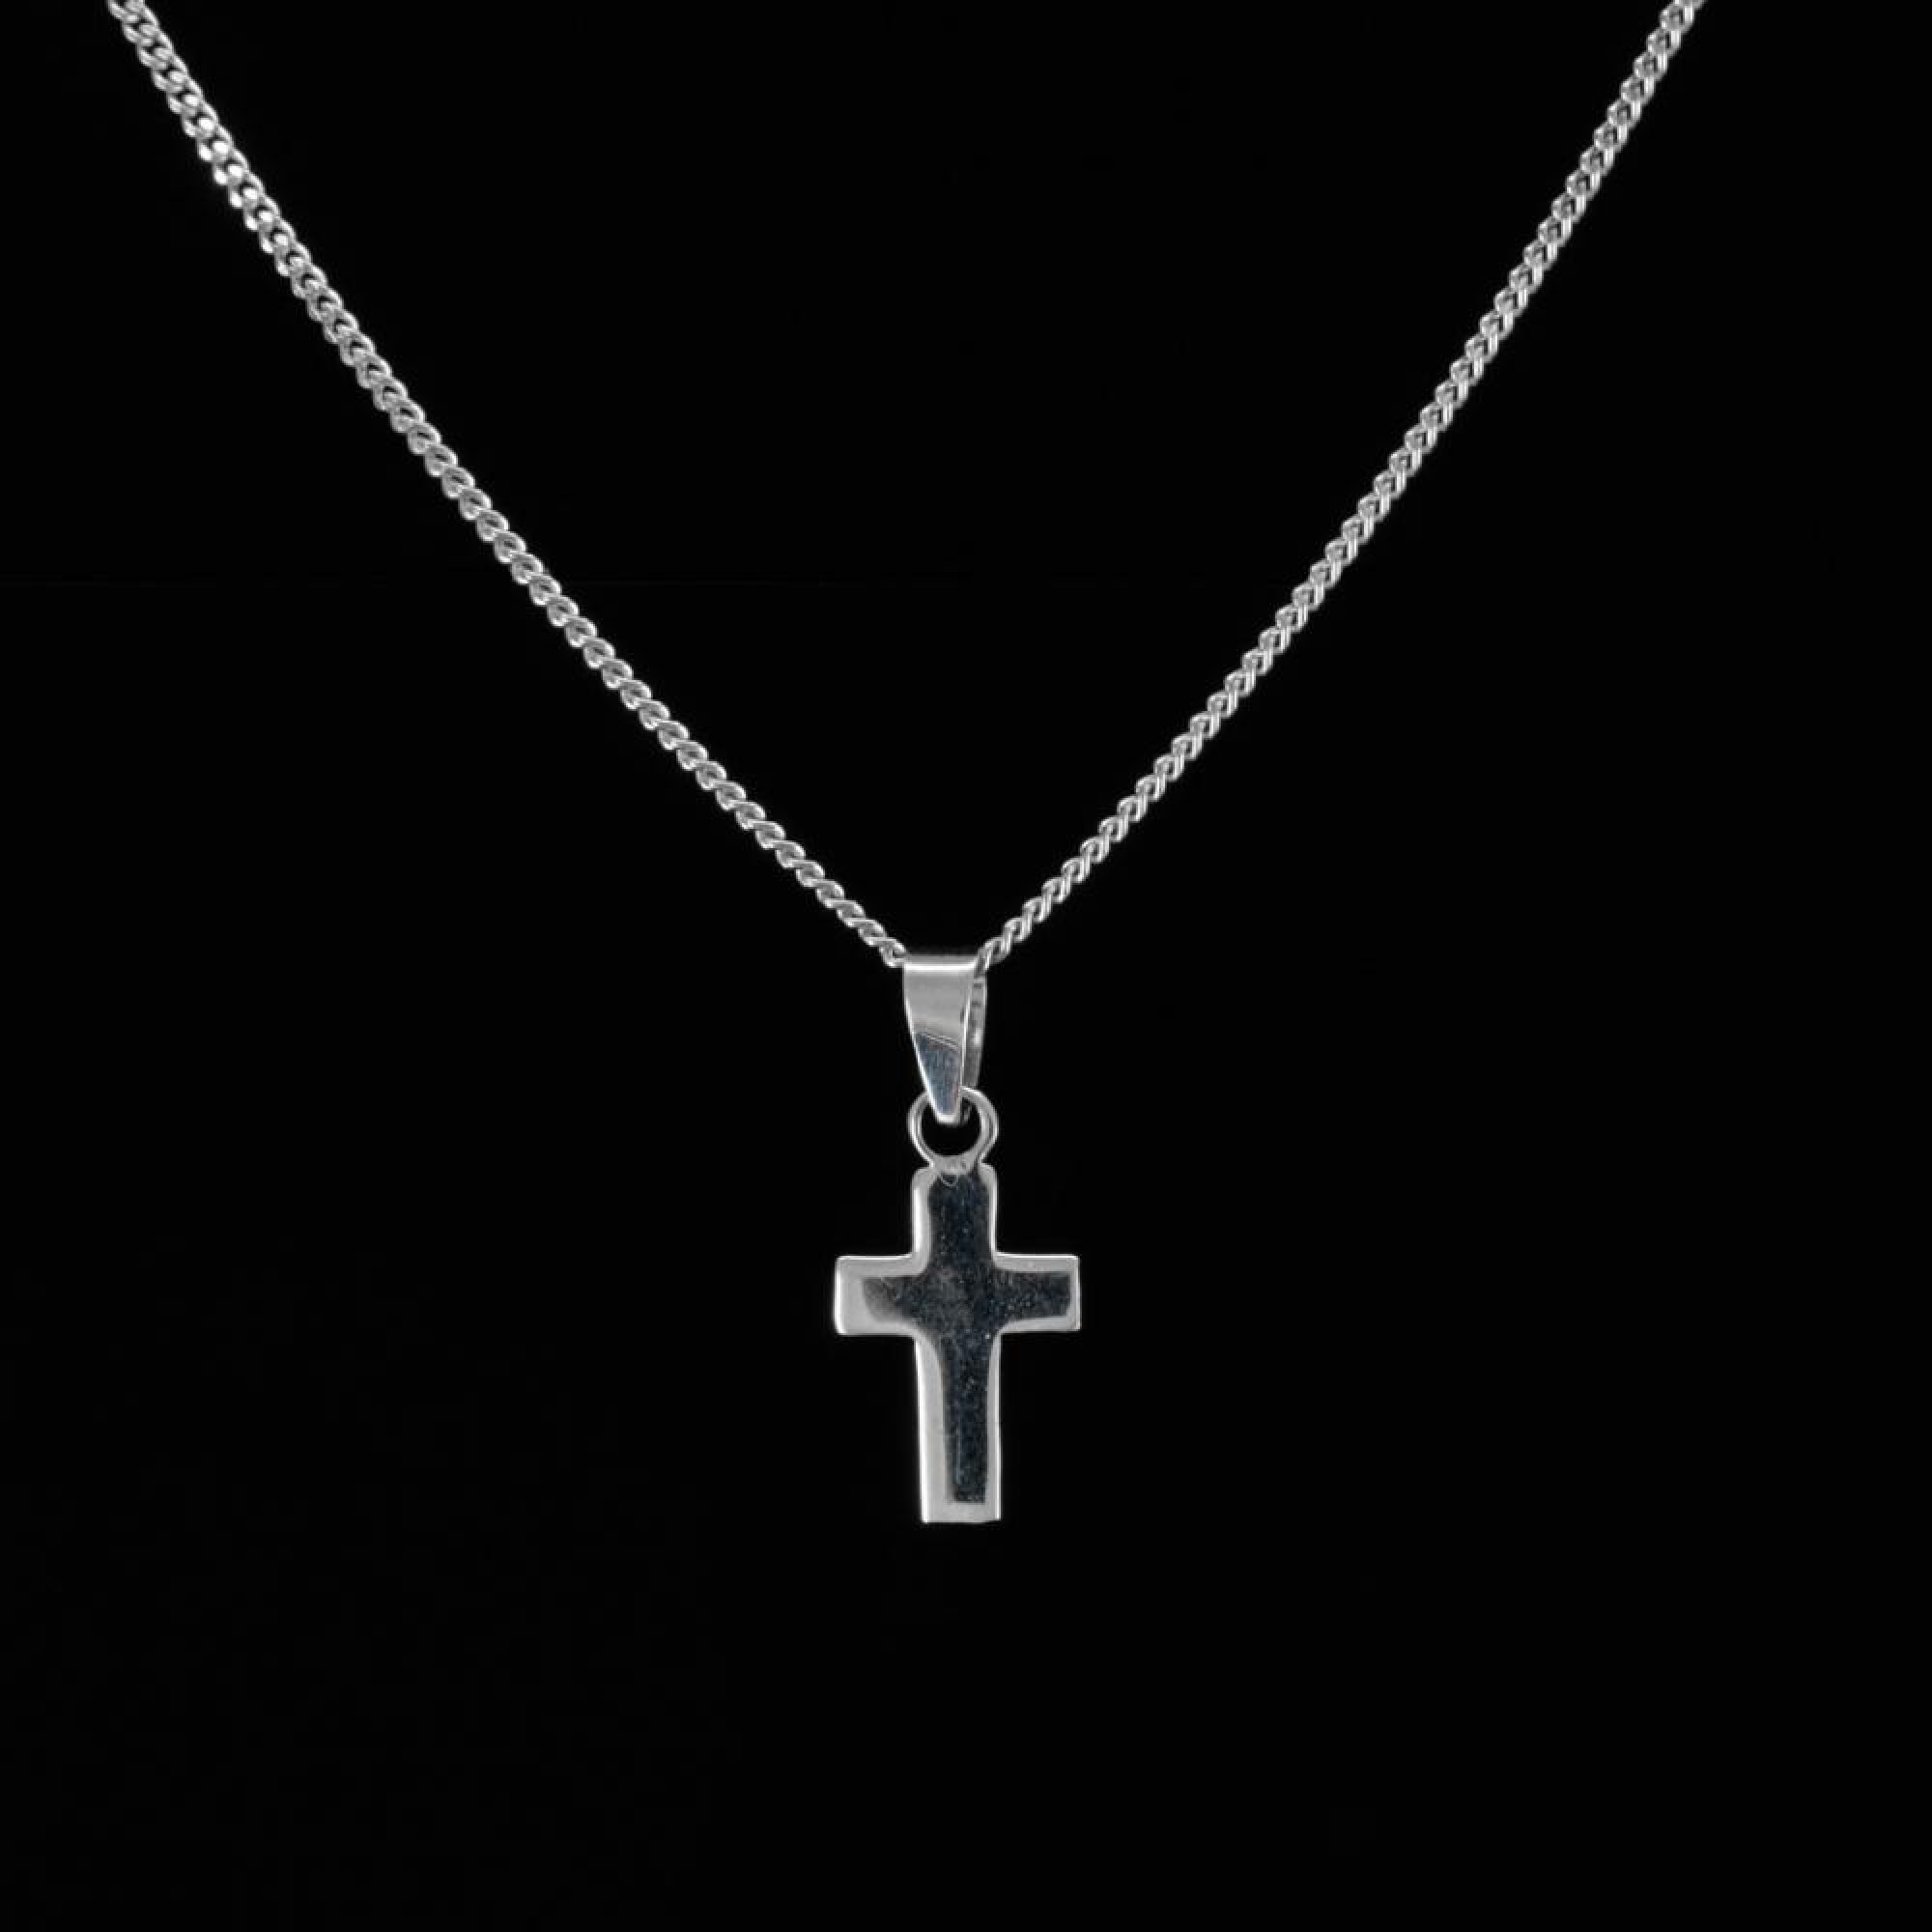 Silver cross